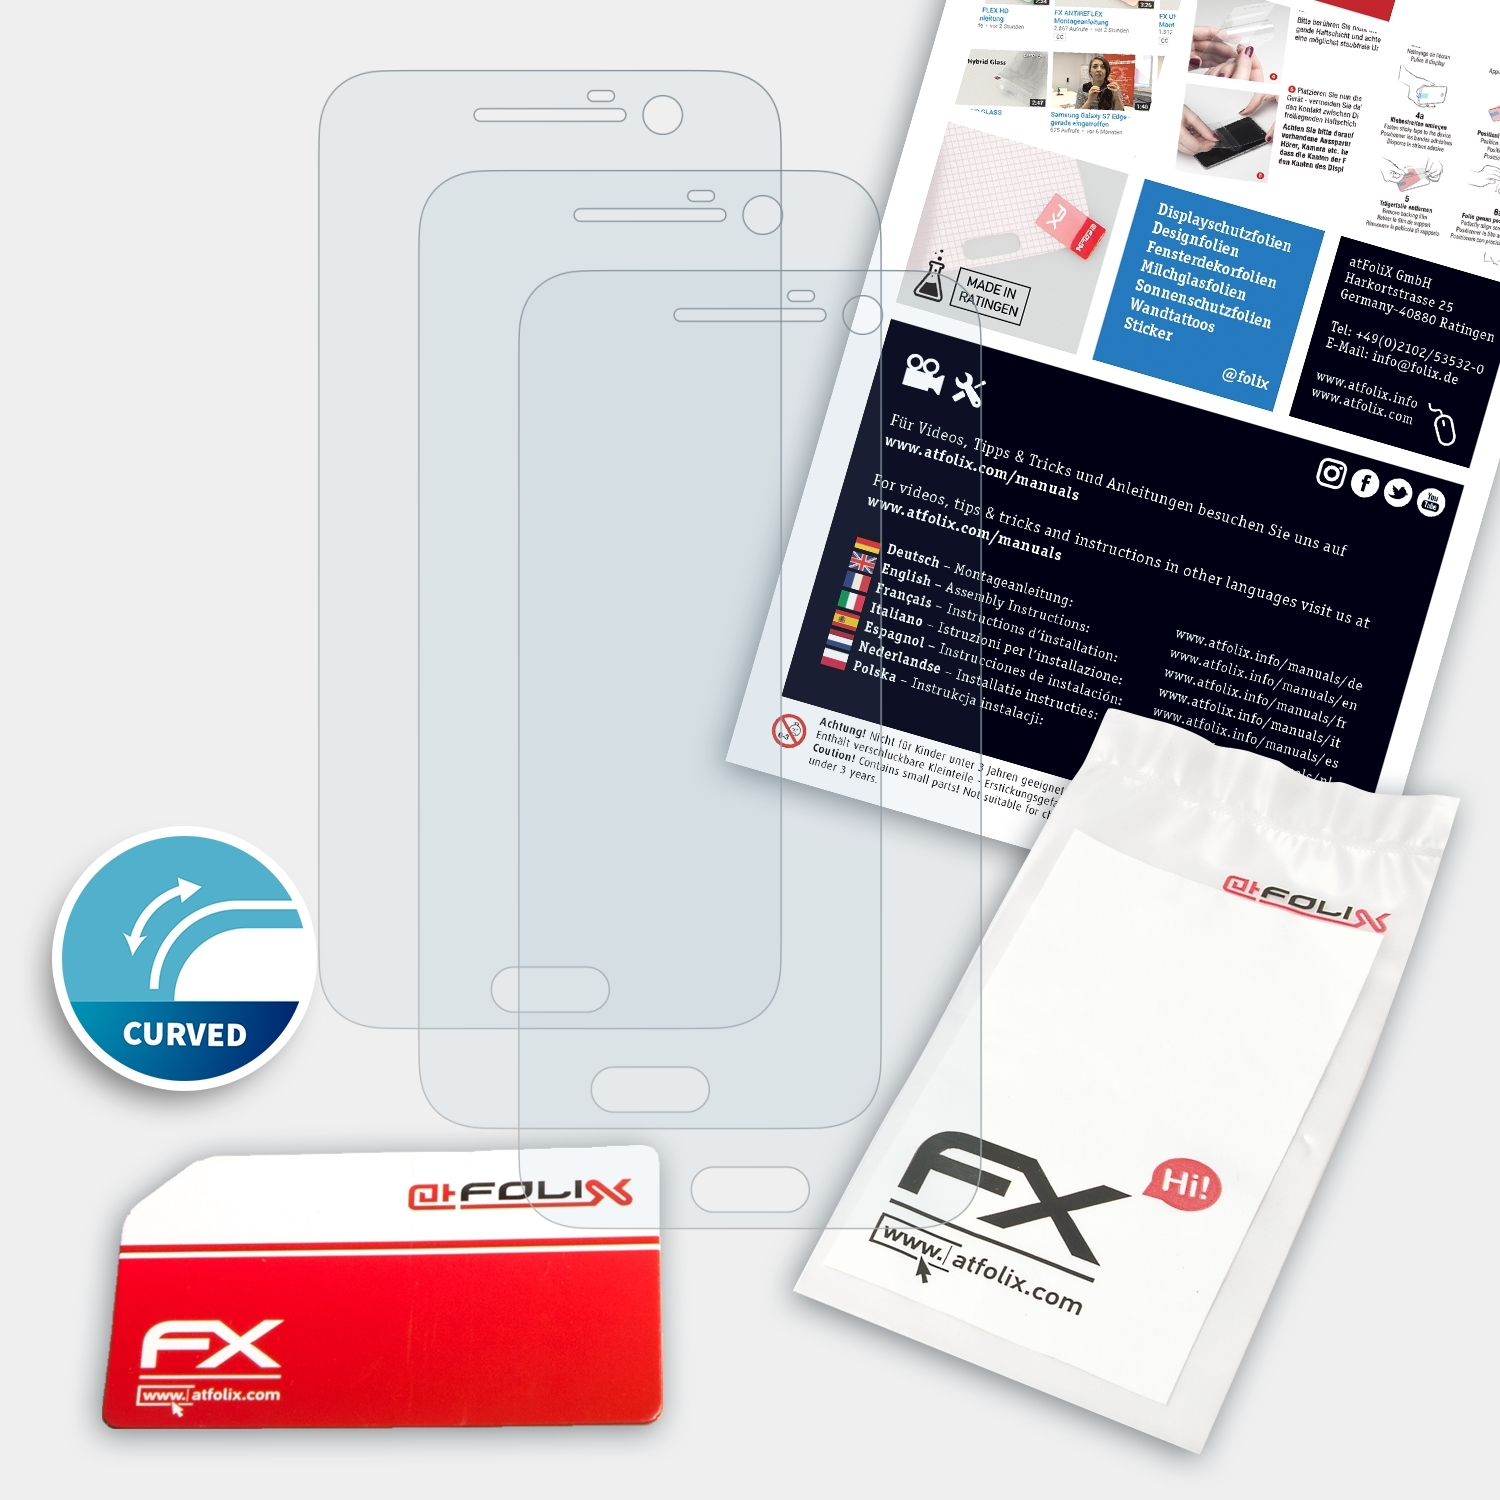 HTC FX-ActiFleX Displayschutz(für 3x 10) ATFOLIX